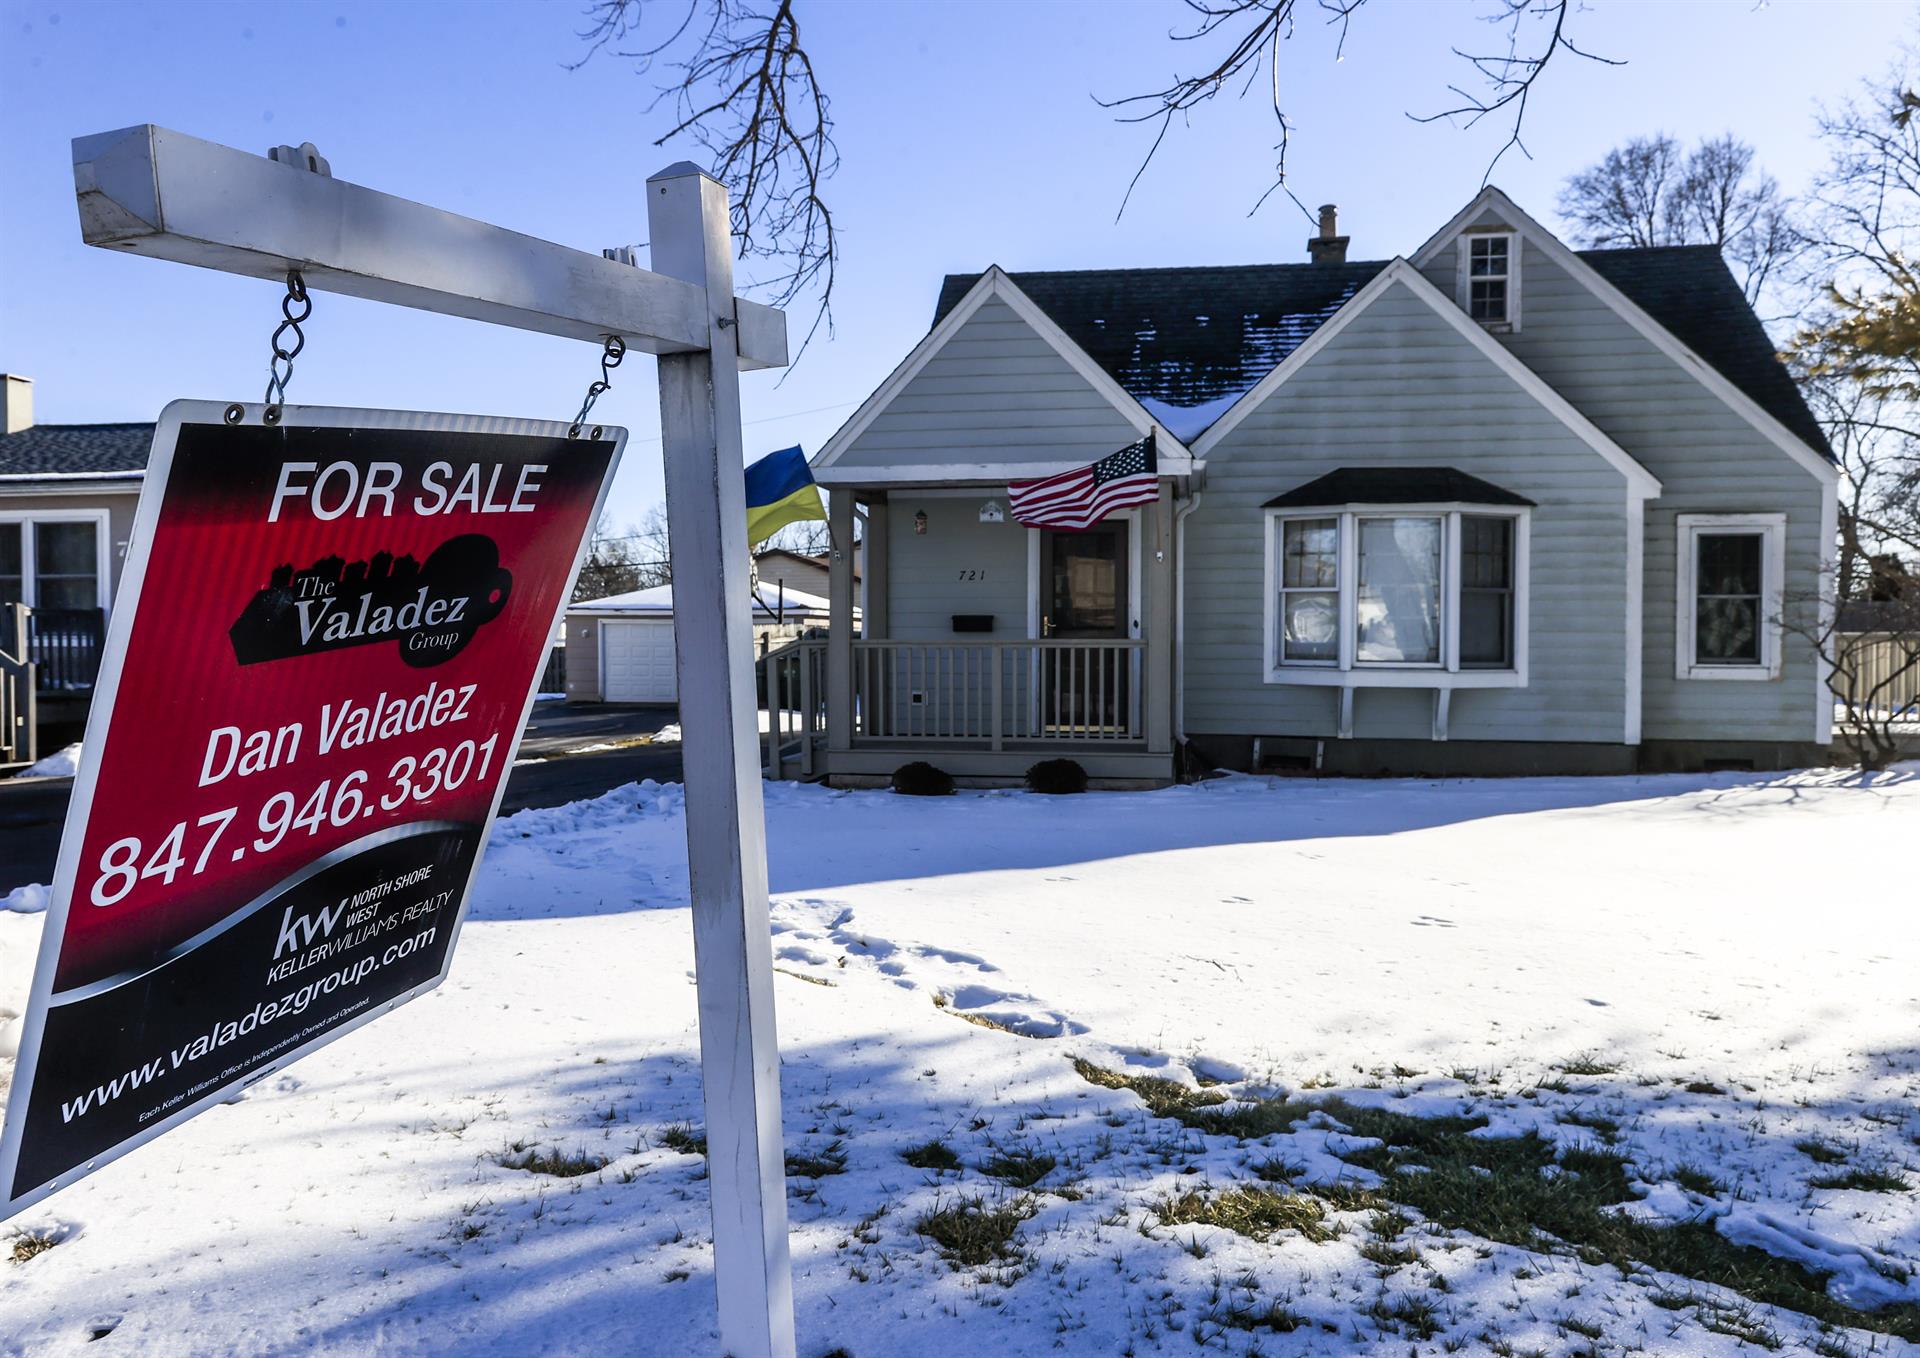 Tras la subida de tipos en EE.UU., ¿habrá una nueva crisis inmobiliaria?